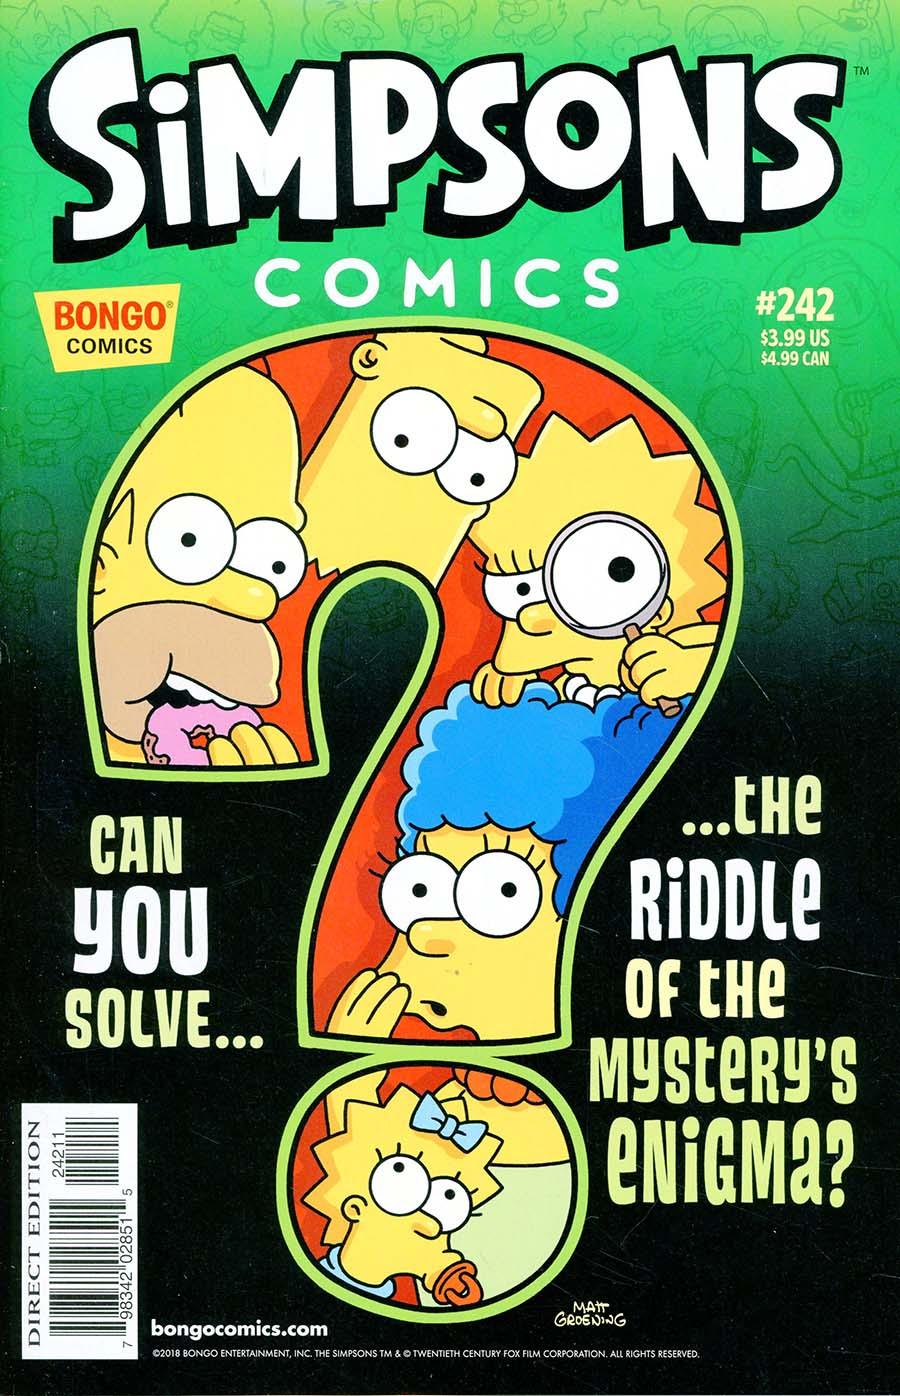 Simpsons Comics Vol. 1 #242